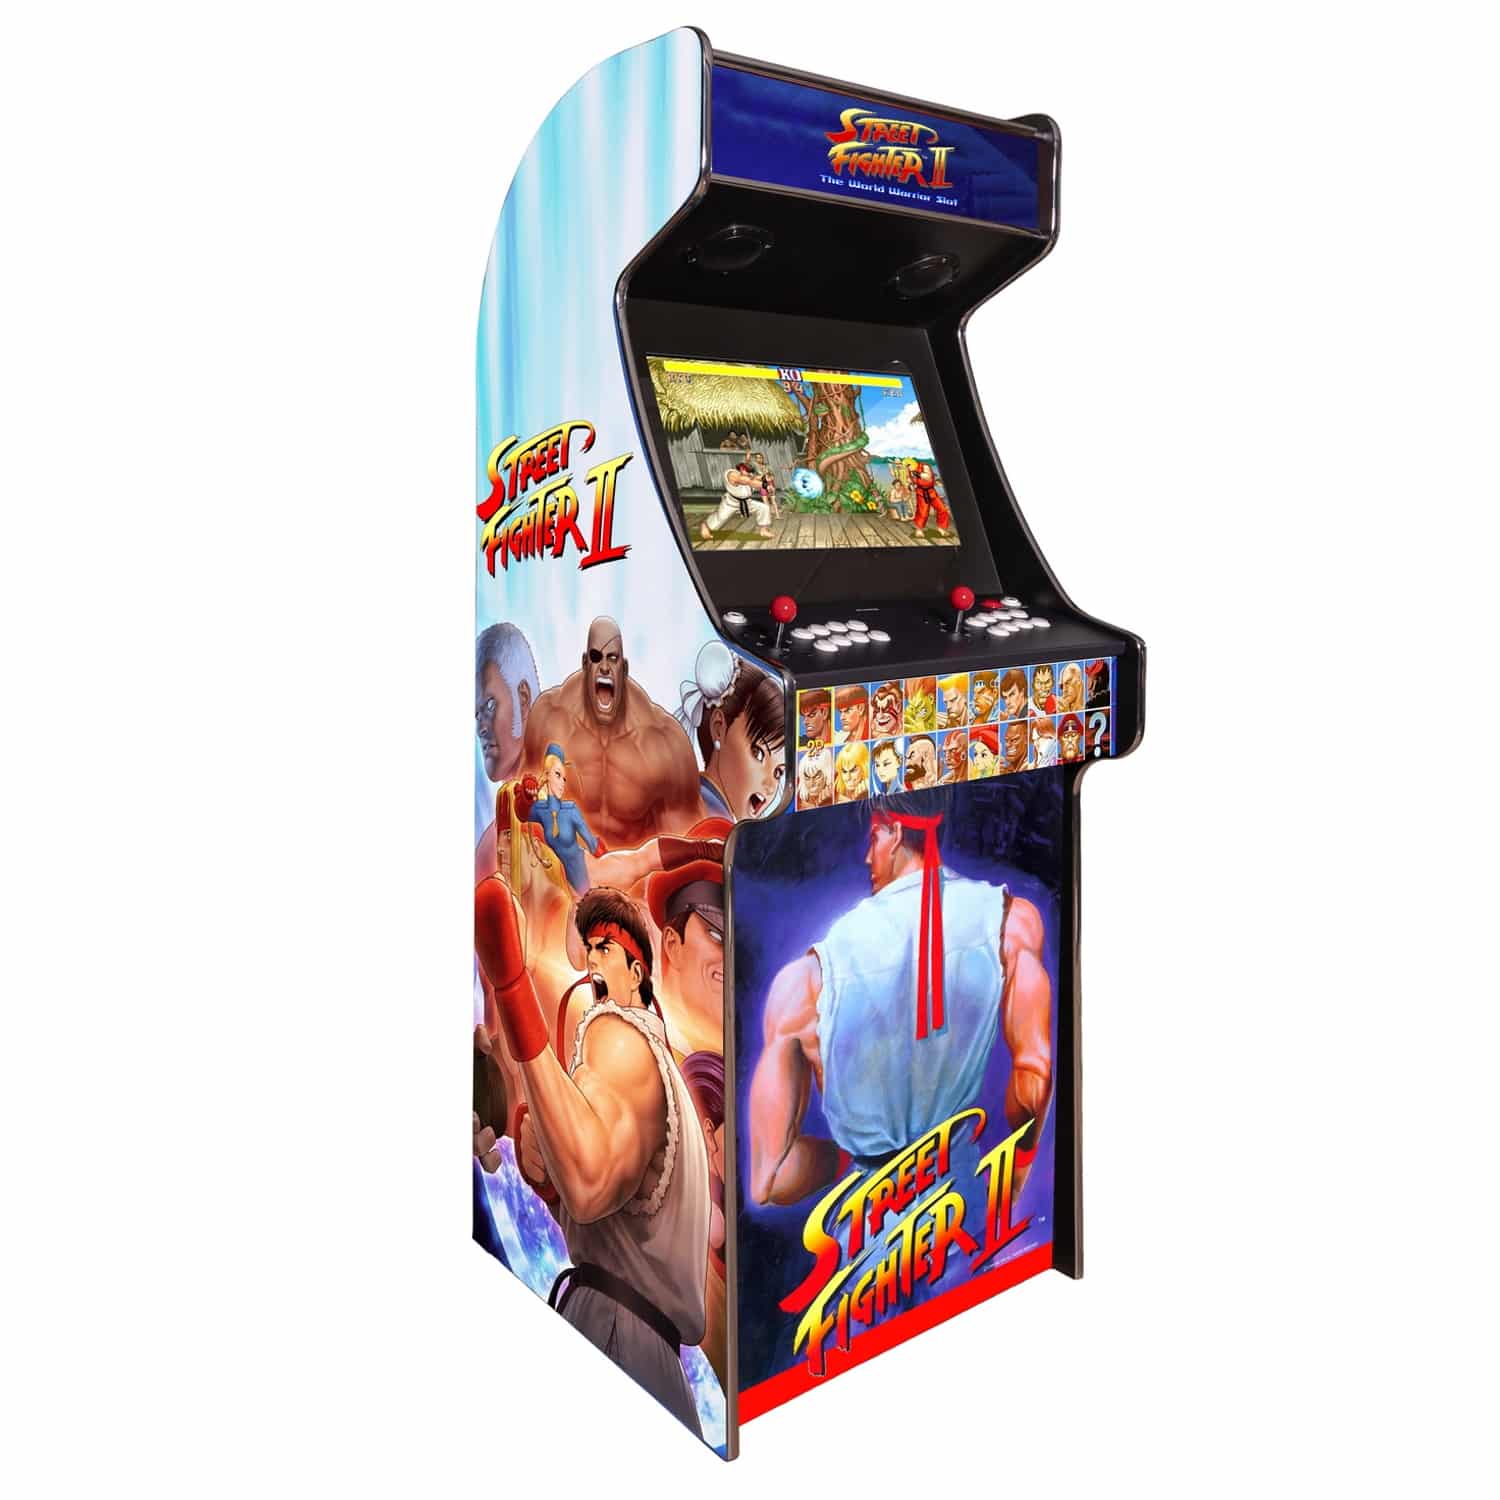 arcade-machine-borne-born-jeux-cafe-anciens-retro-recalbox-neuve-moderne-hdmi-pas-cher-vente-achat-prix-france-belgique-streetfighter